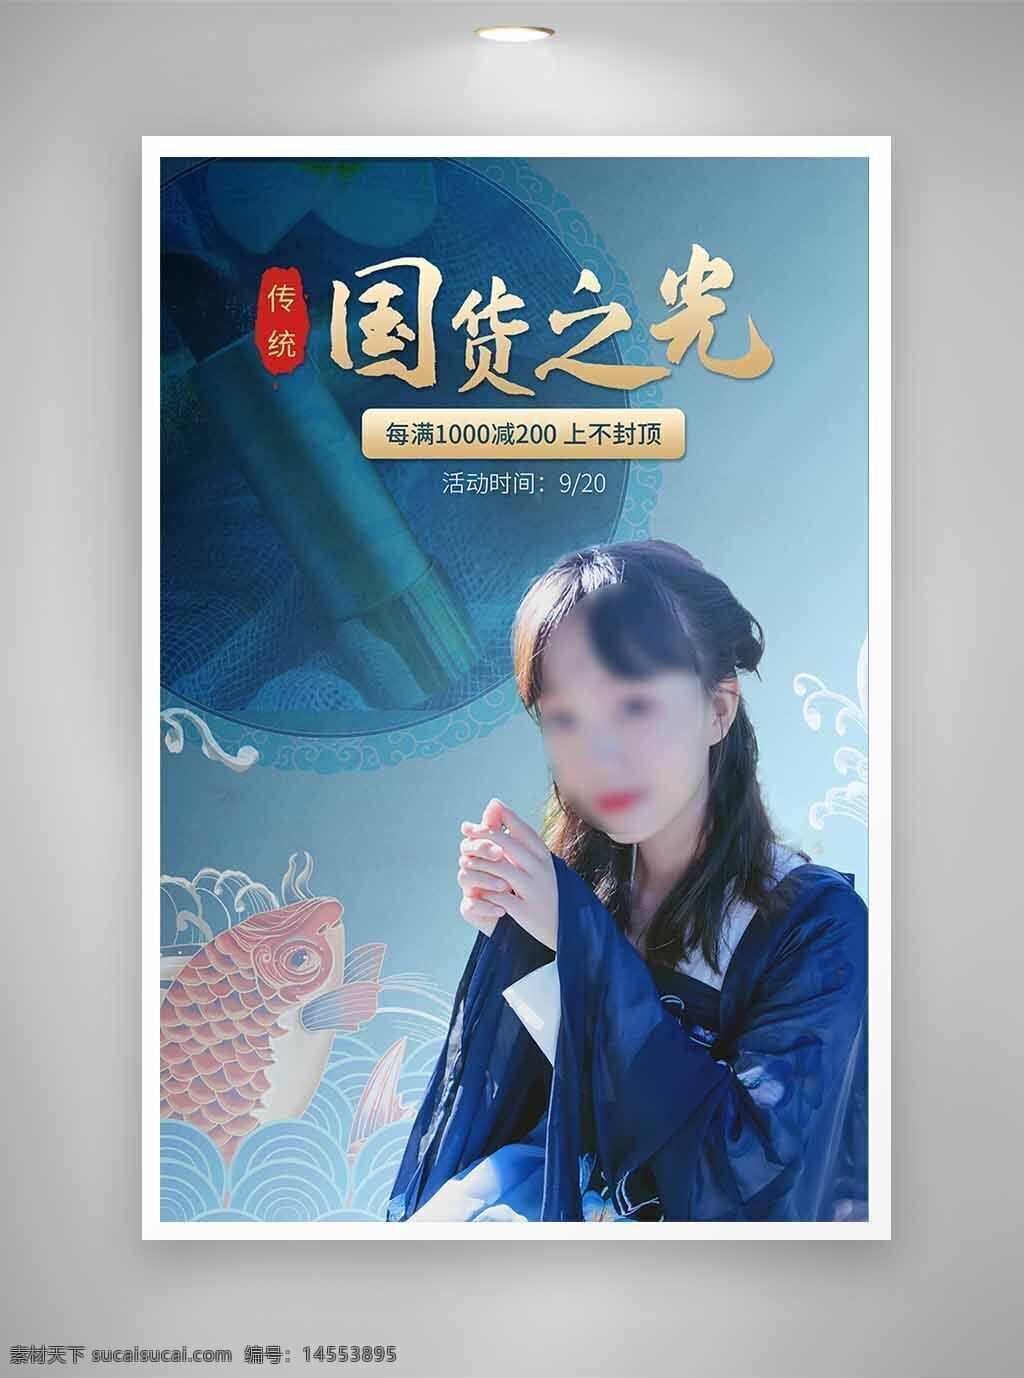 中国风海报 古风海报 促销海报 节日海报